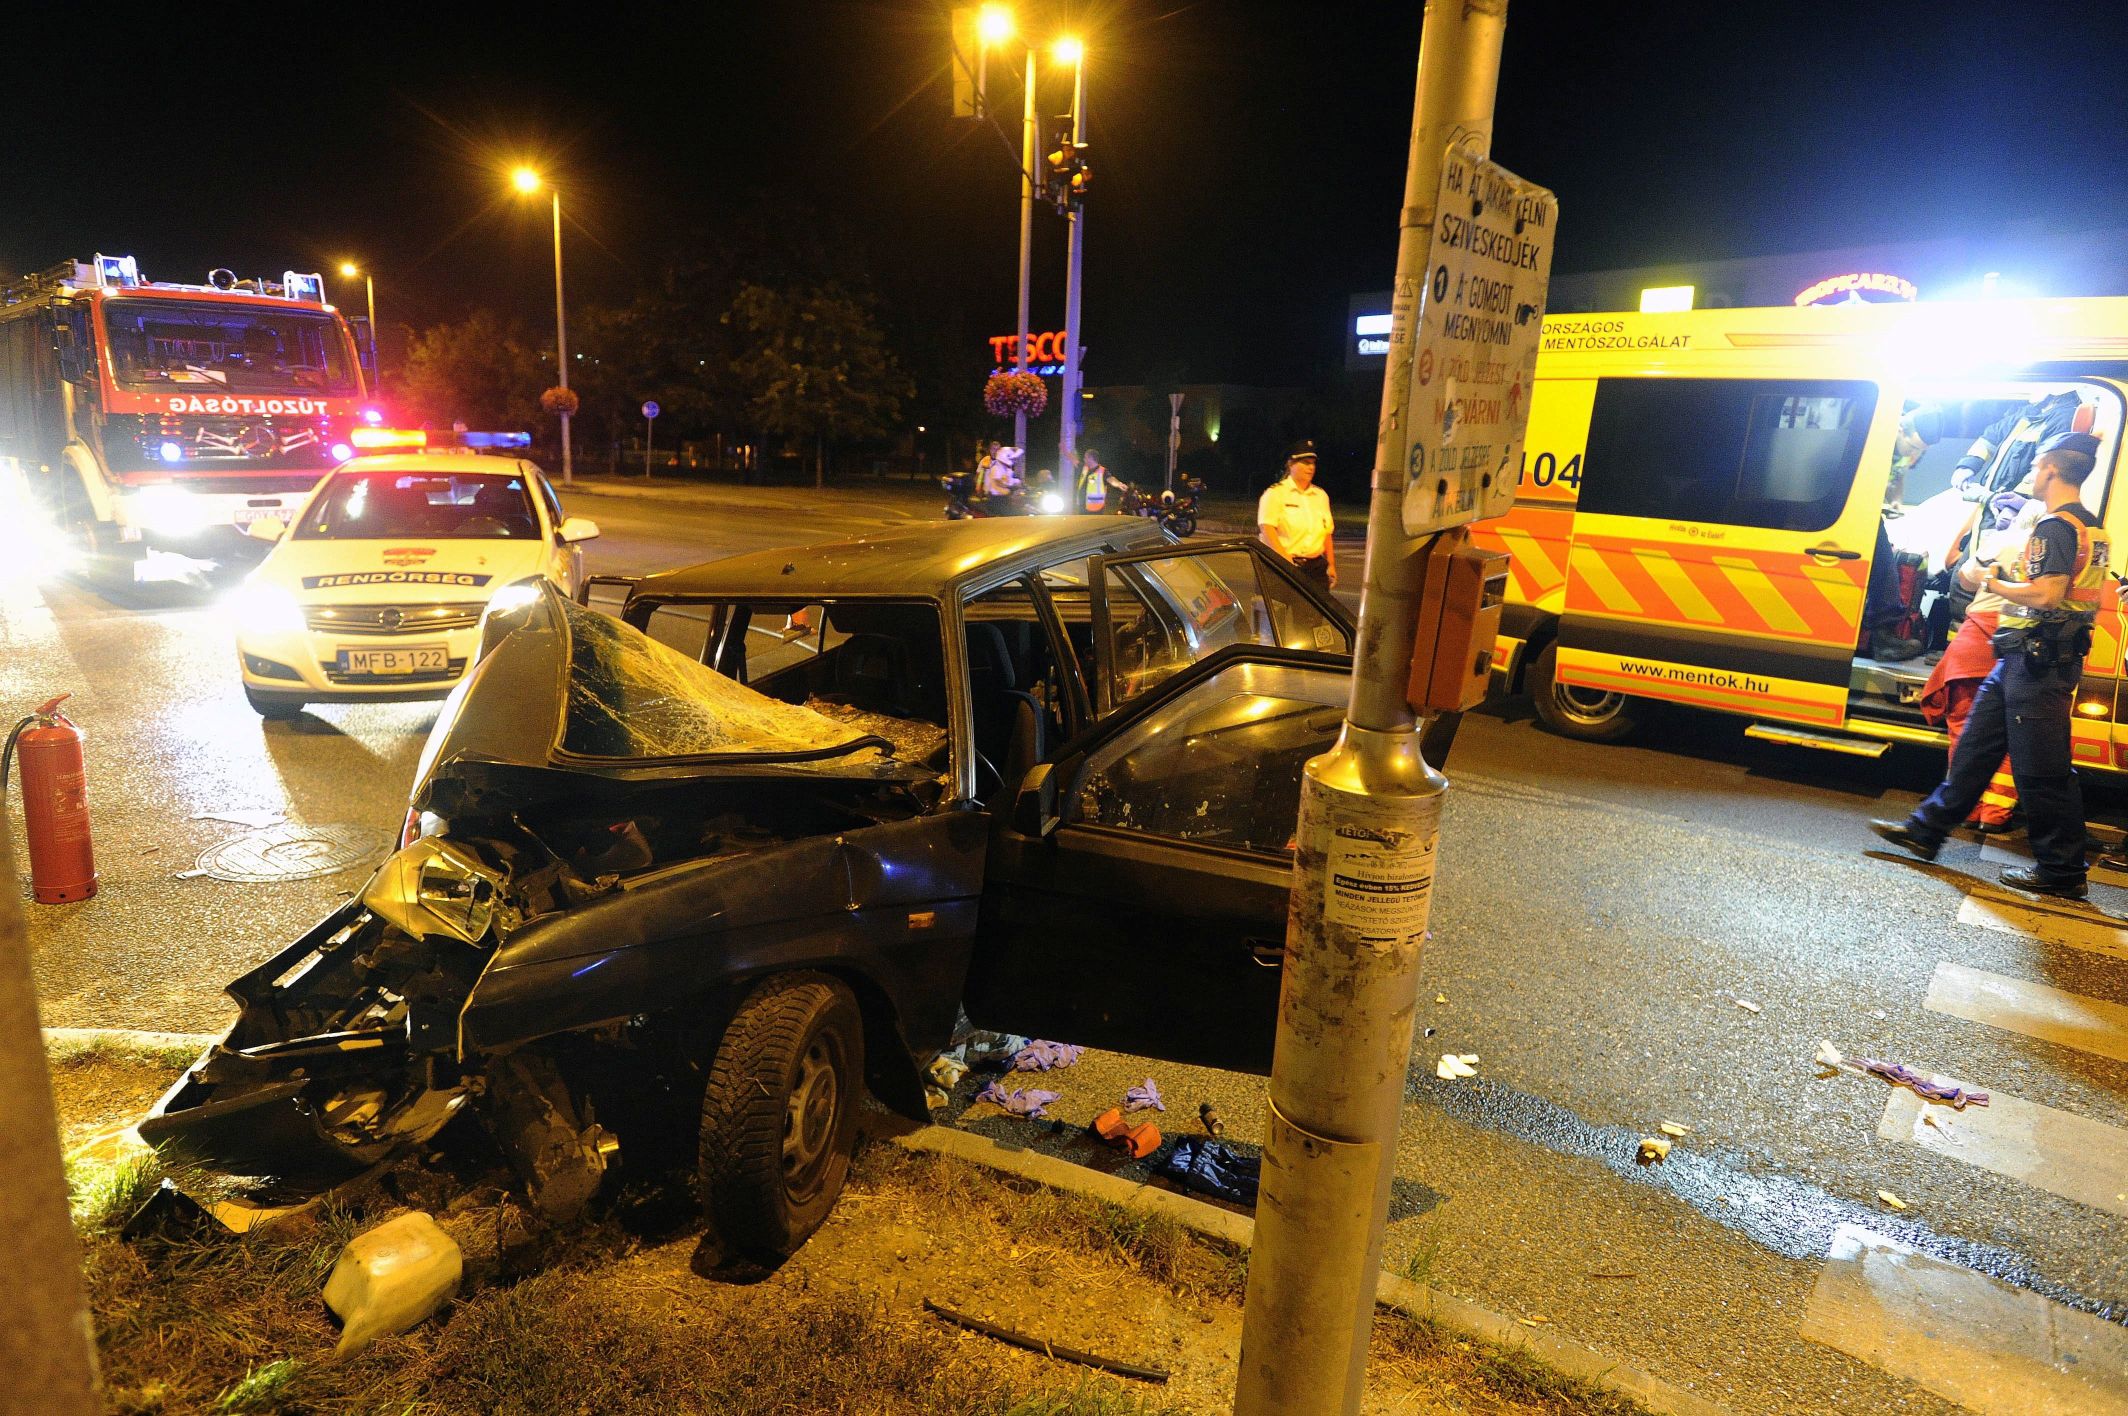 Budapest, 2016. szeptember 4. Összetört személygépkocsi, miután villanyoszlopnak ütközött Budapesten, a XXII. kerület Nagytétényi úton 2016. szeptember 3-án. A balesetben a jármû vezetõje súlyosan megsérült. MTI Fotó: Mihádák Zoltán